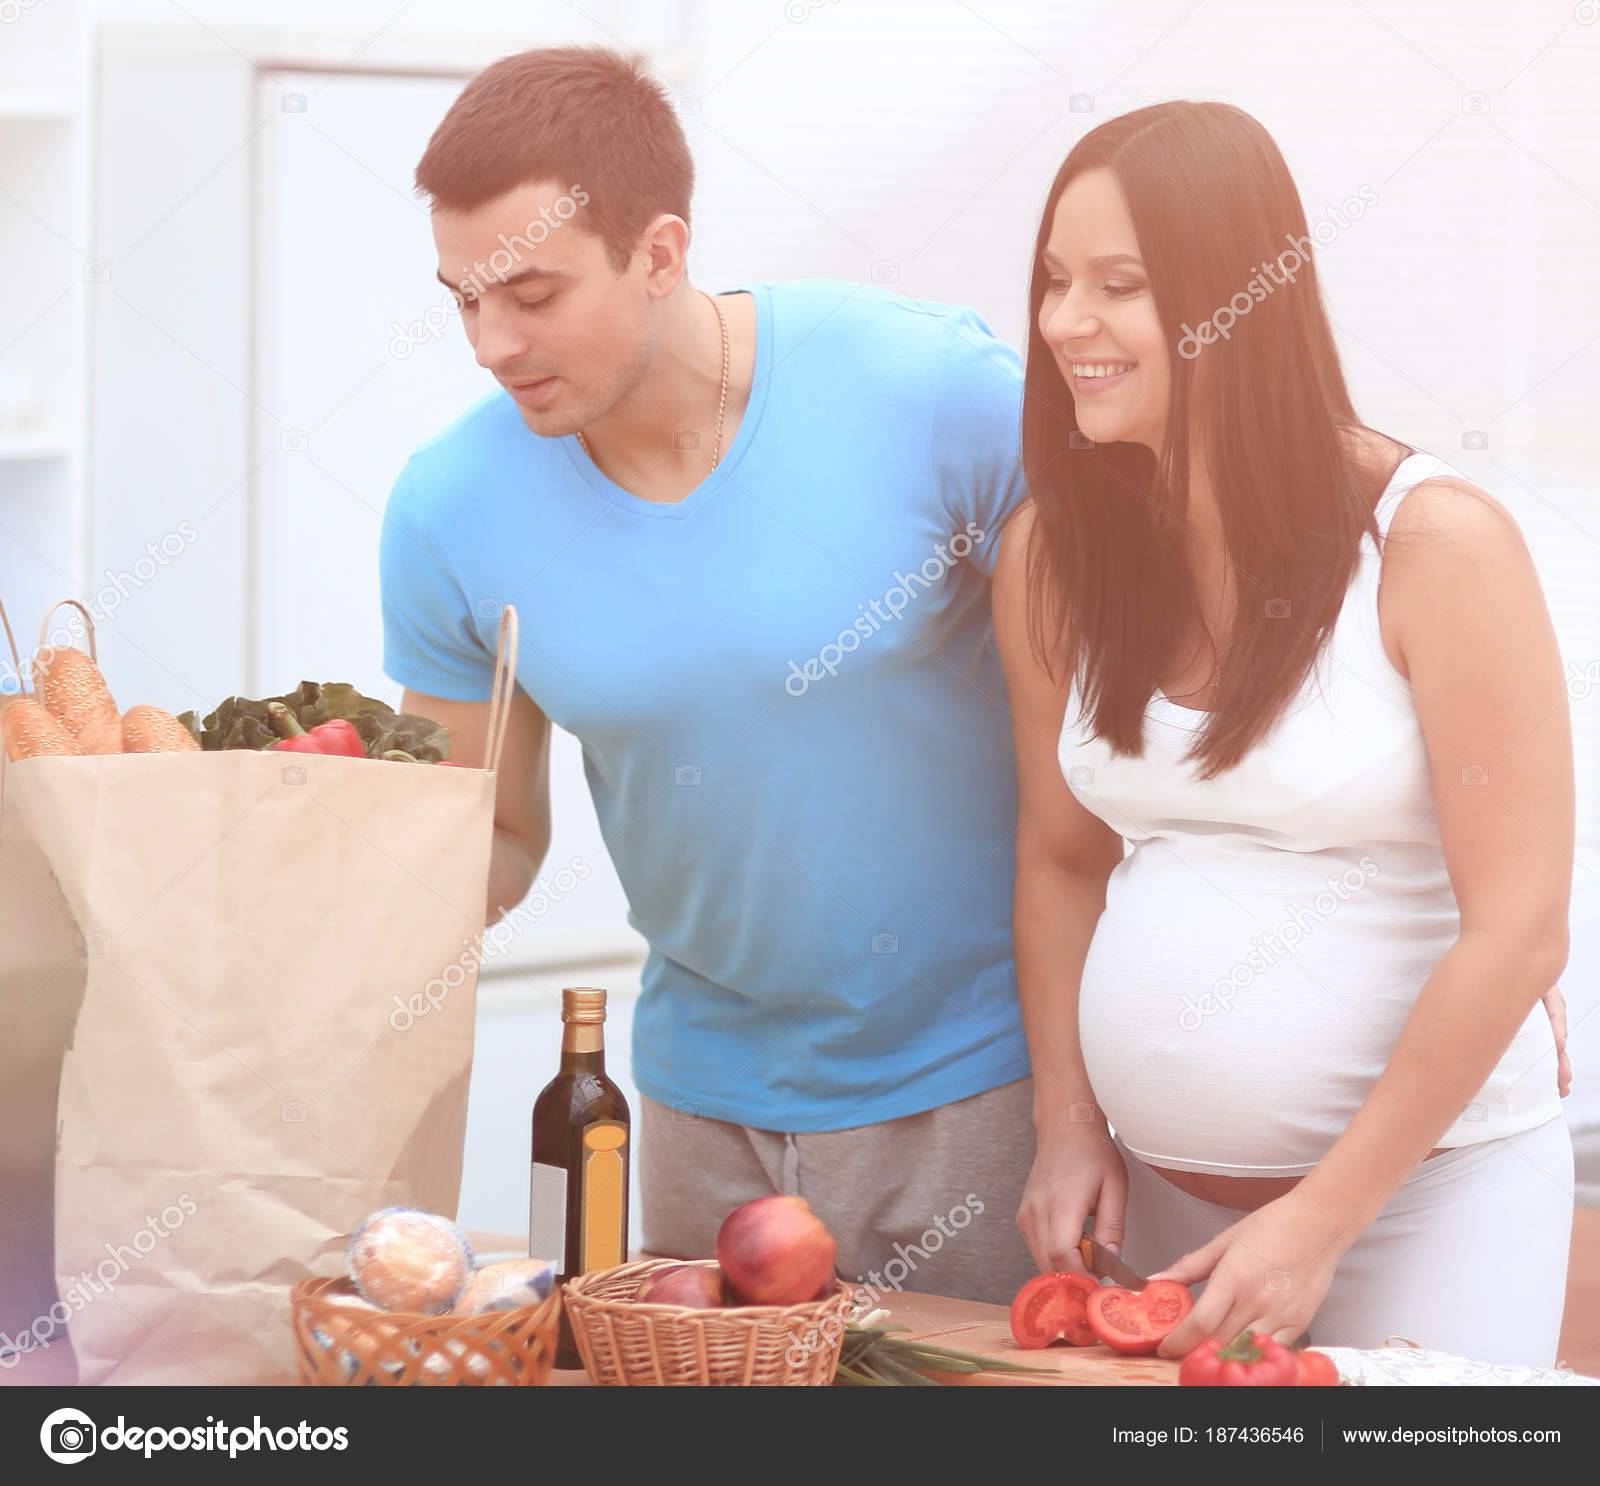 ᐉ для мужей: инструкция по обращению с беременной женой. реакция мужчин на беременность — что к чему - ➡ sp-kupavna.ru